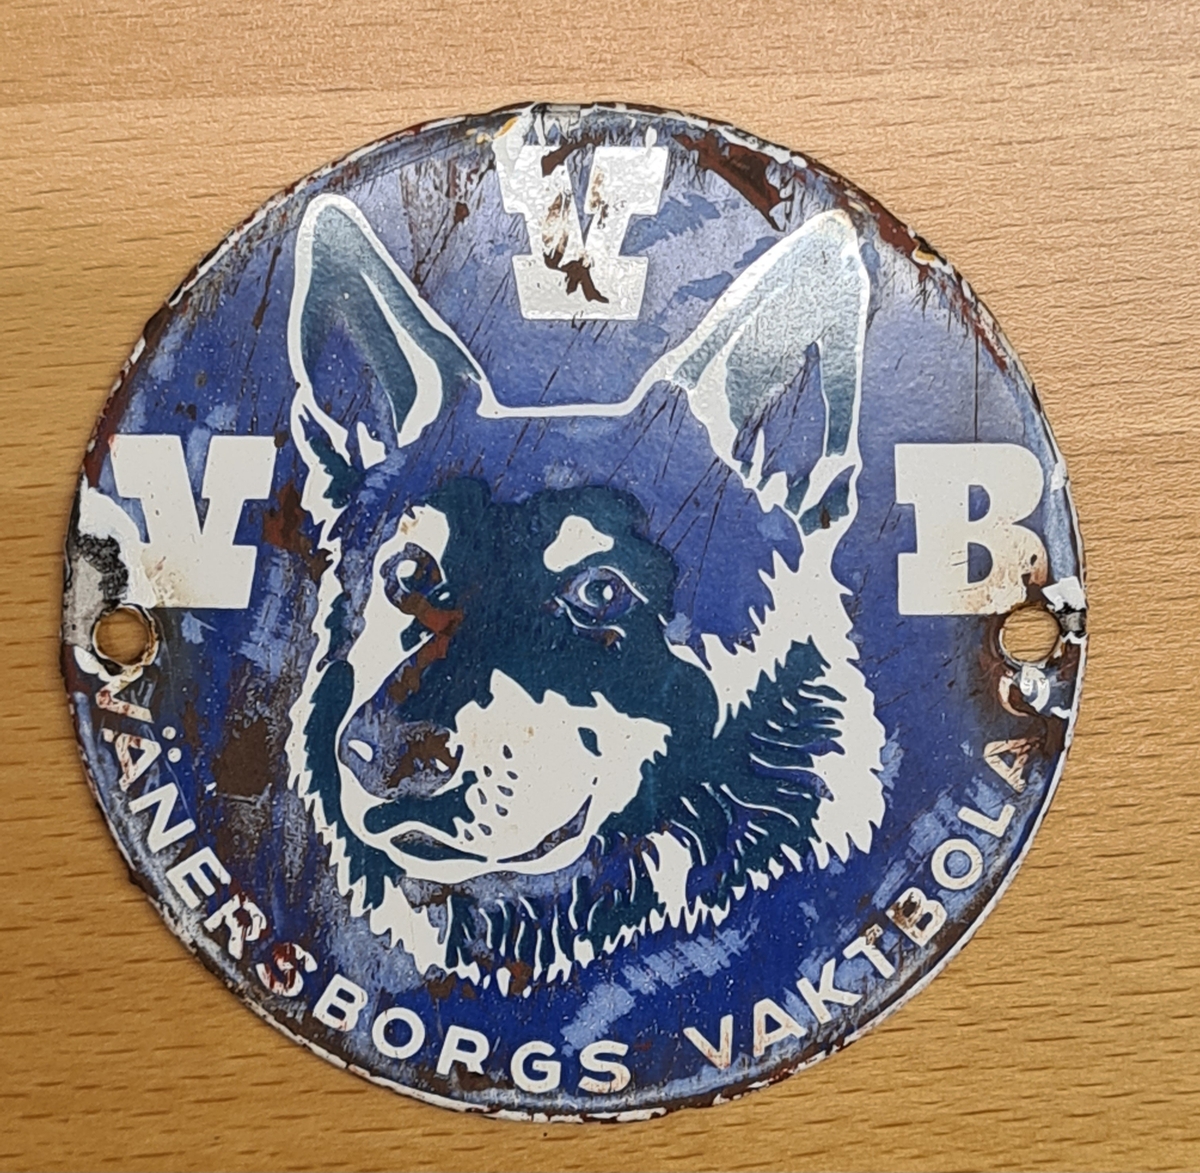 Skylt från Vänersborgs vaktbolag (VVB). 
Det är en rund skylt med två hål för montering. Skylten är emaljerad med en dekor med en hund.
Skylten var monterad på Vänersborgs museums dörr. Den framkom då dörren skrapades inför en ommålning.